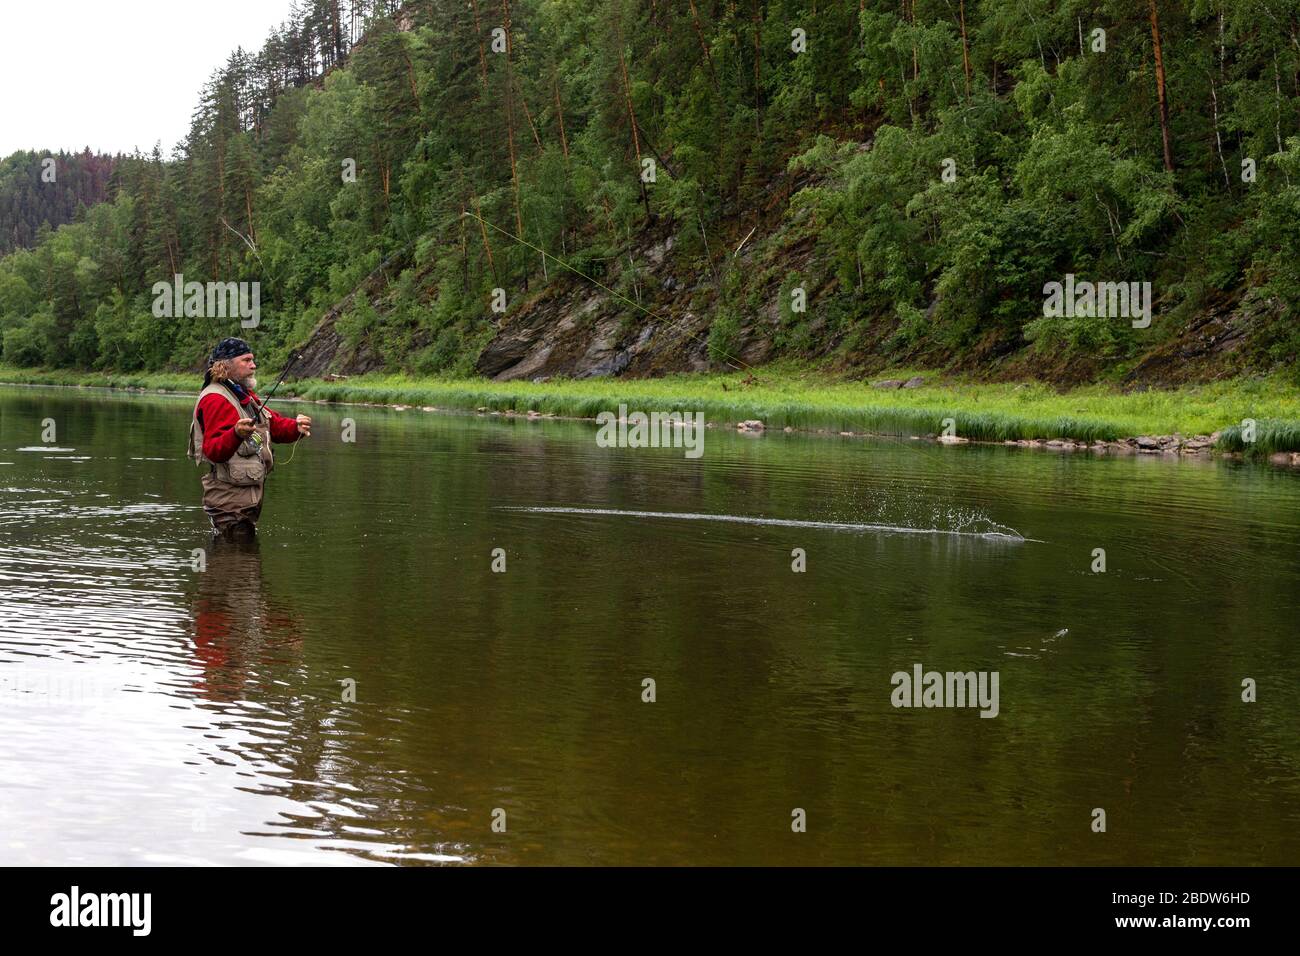 Vue latérale portrait d'un pêcheur brutal d'âge debout au niveau de la hanche dans une rivière étroite en forêt au moment de pêcher le poisson par un pêche. Passe-temps actif, h Banque D'Images